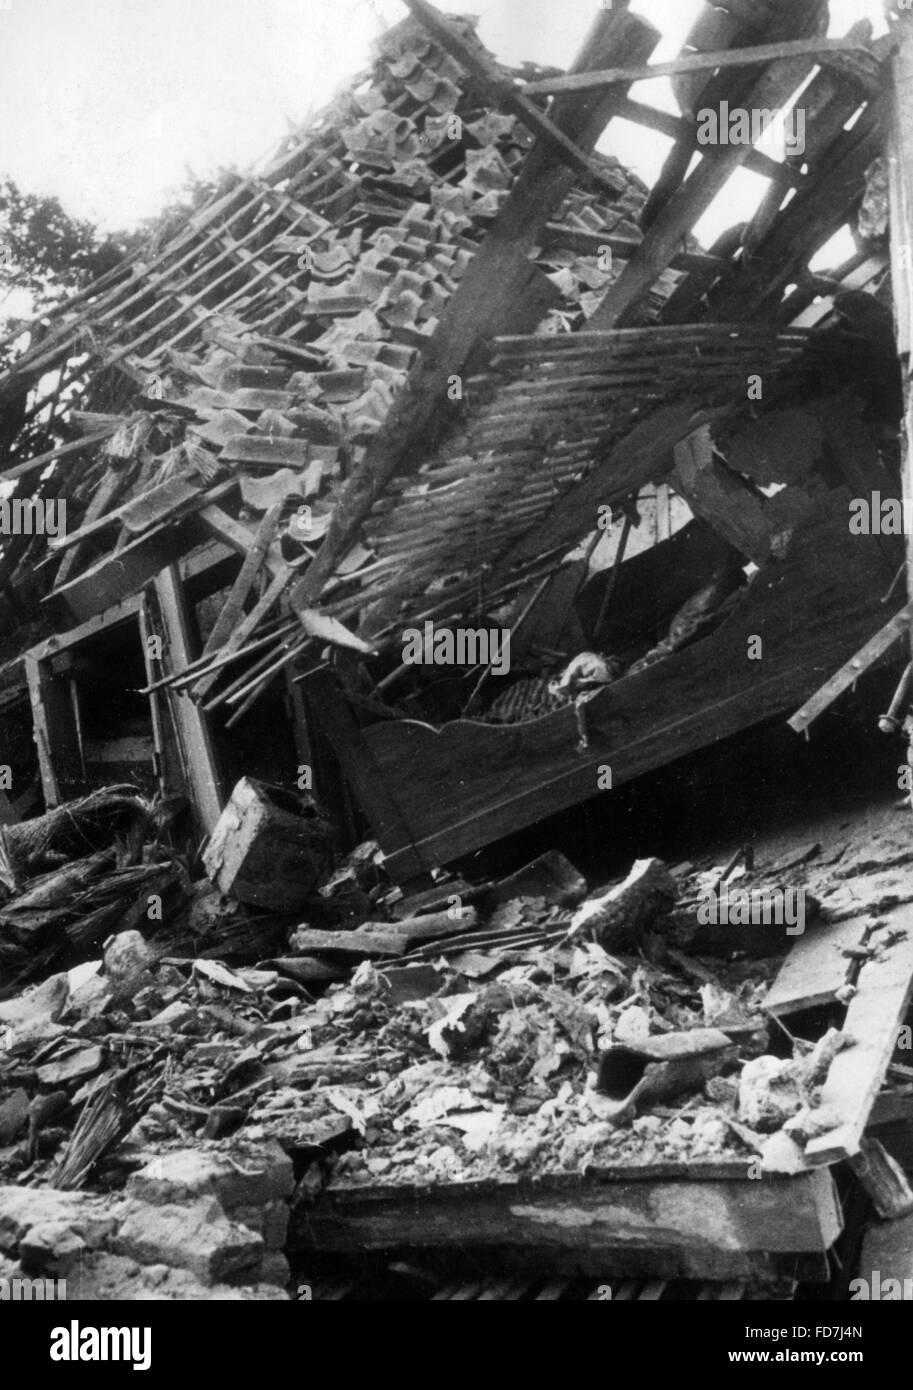 Un bâtiment résidentiel détruit lors d'un raid aérien, 1940 Banque D'Images